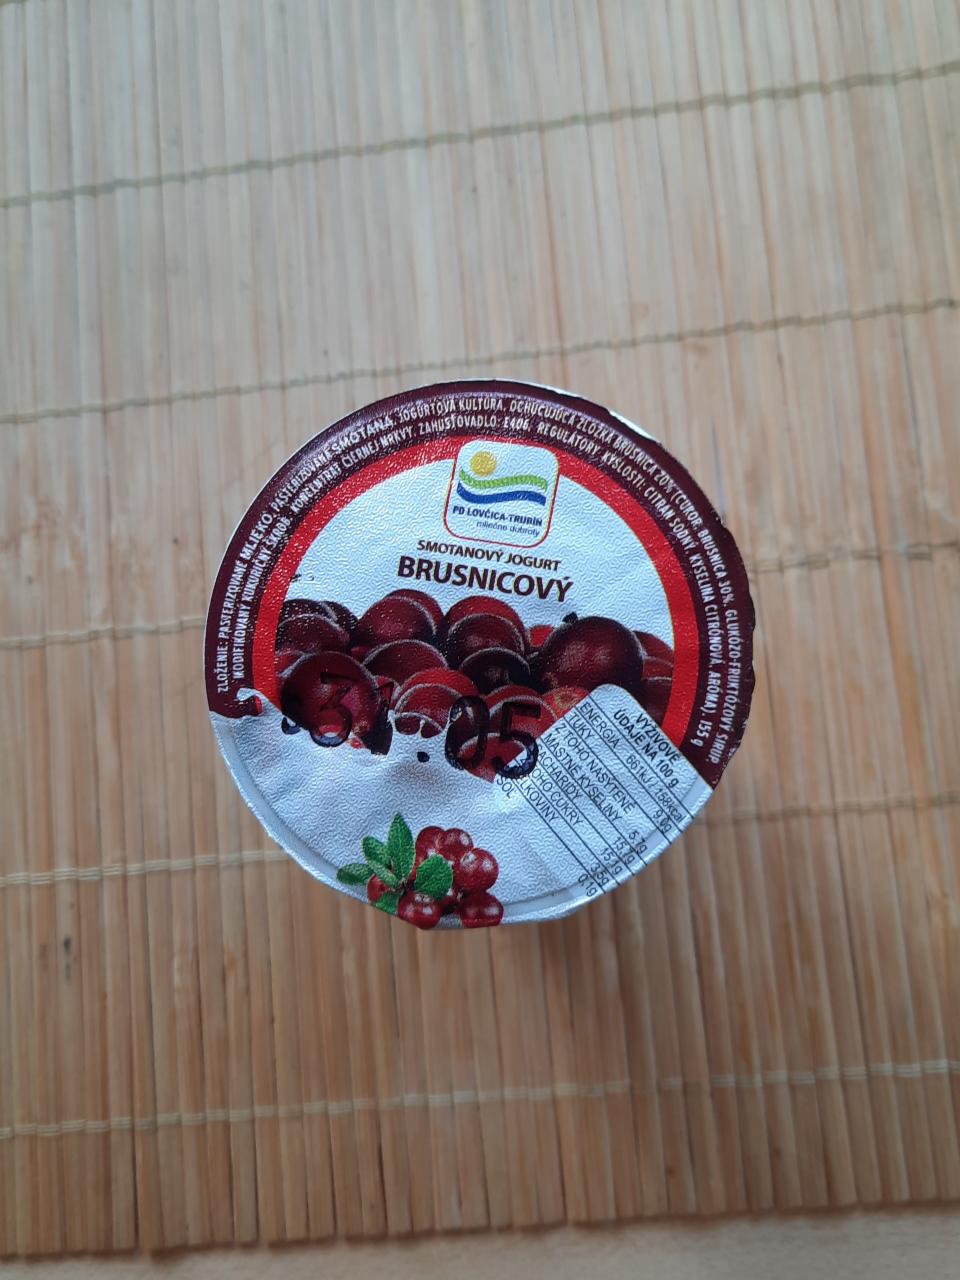 Fotografie - Smotanový jogurt brusnicový PD Lovčica Trubín